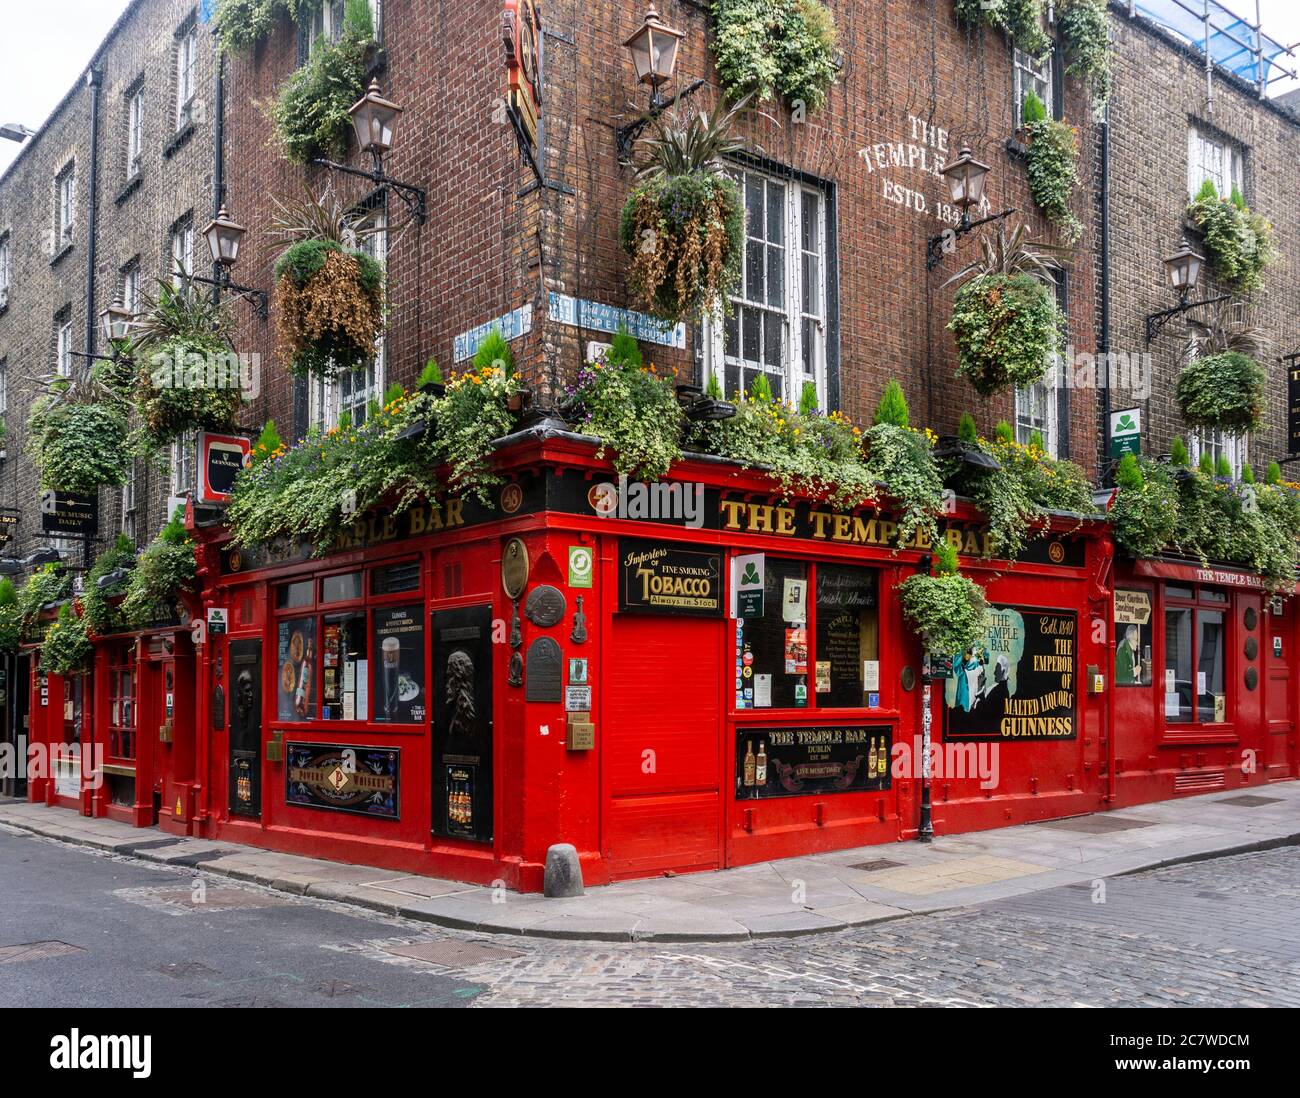 The Temple Bar Pub in Dublin' - die berühmte Ikone dieser Gegend und normalerweise voller Menschen und jetzt vorübergehend wegen der Coronavirus-Epidemie geschlossen. Stockfoto